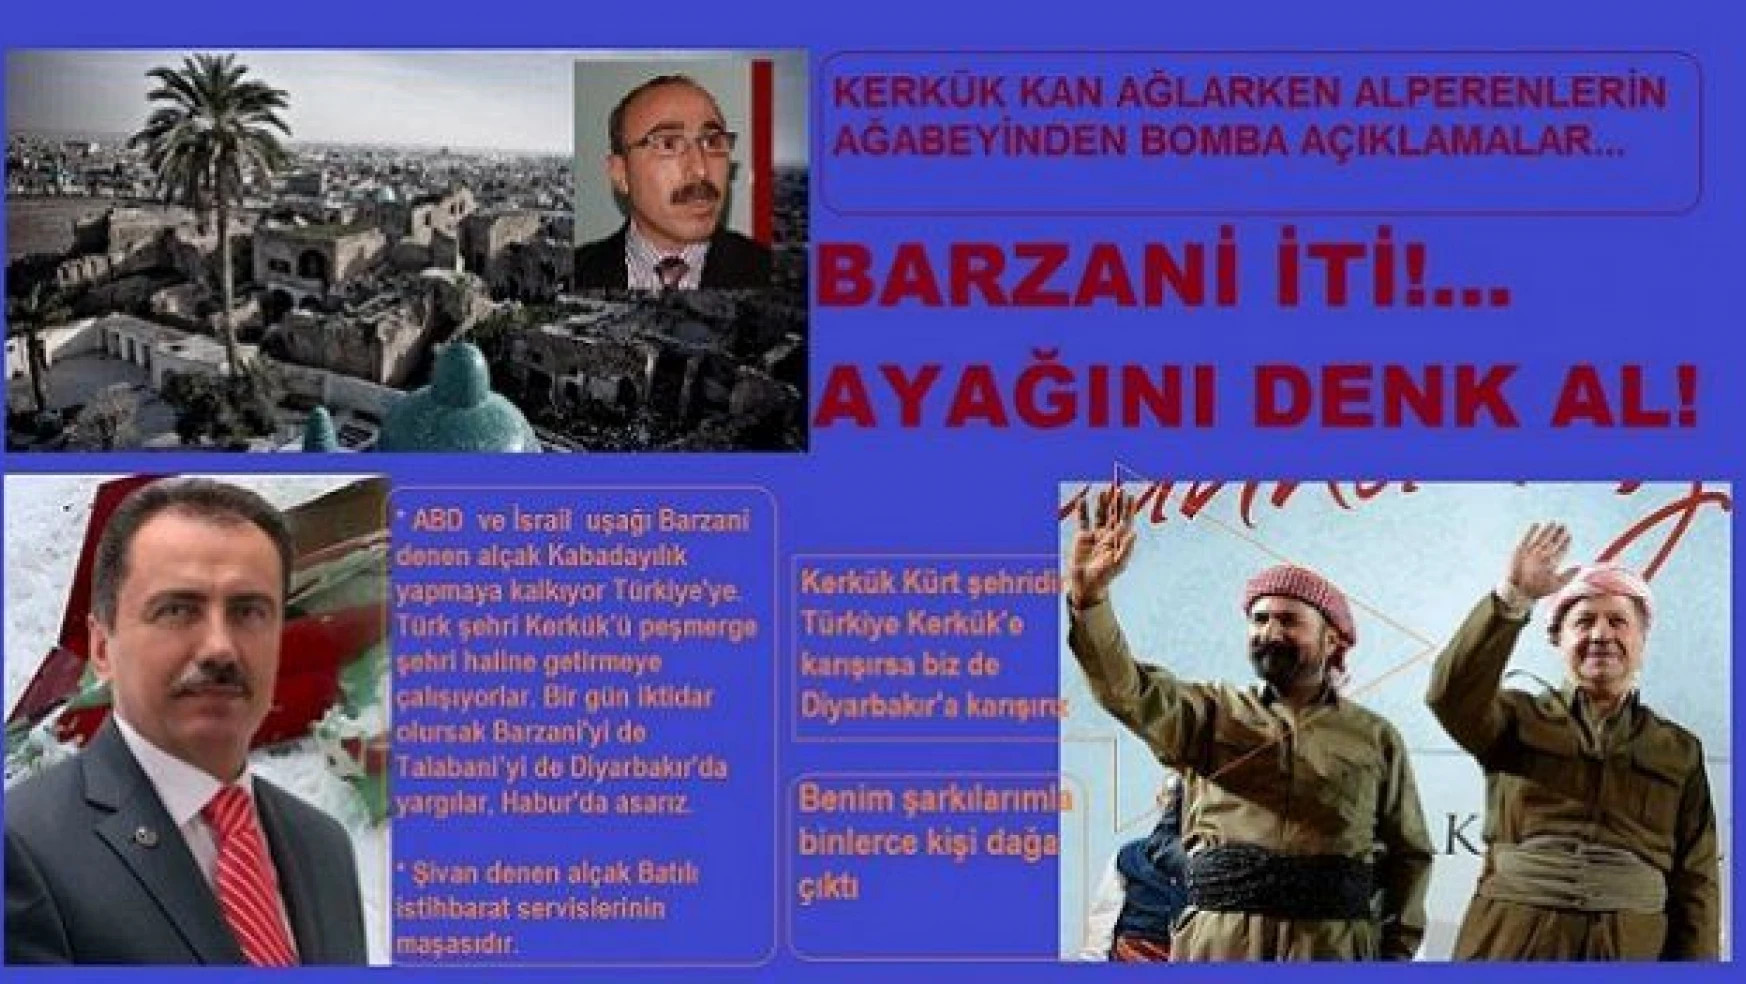 Kerkük kan ağlarken Alperenlerden şok uyarı: Ayağını denk al Barzani iti!..